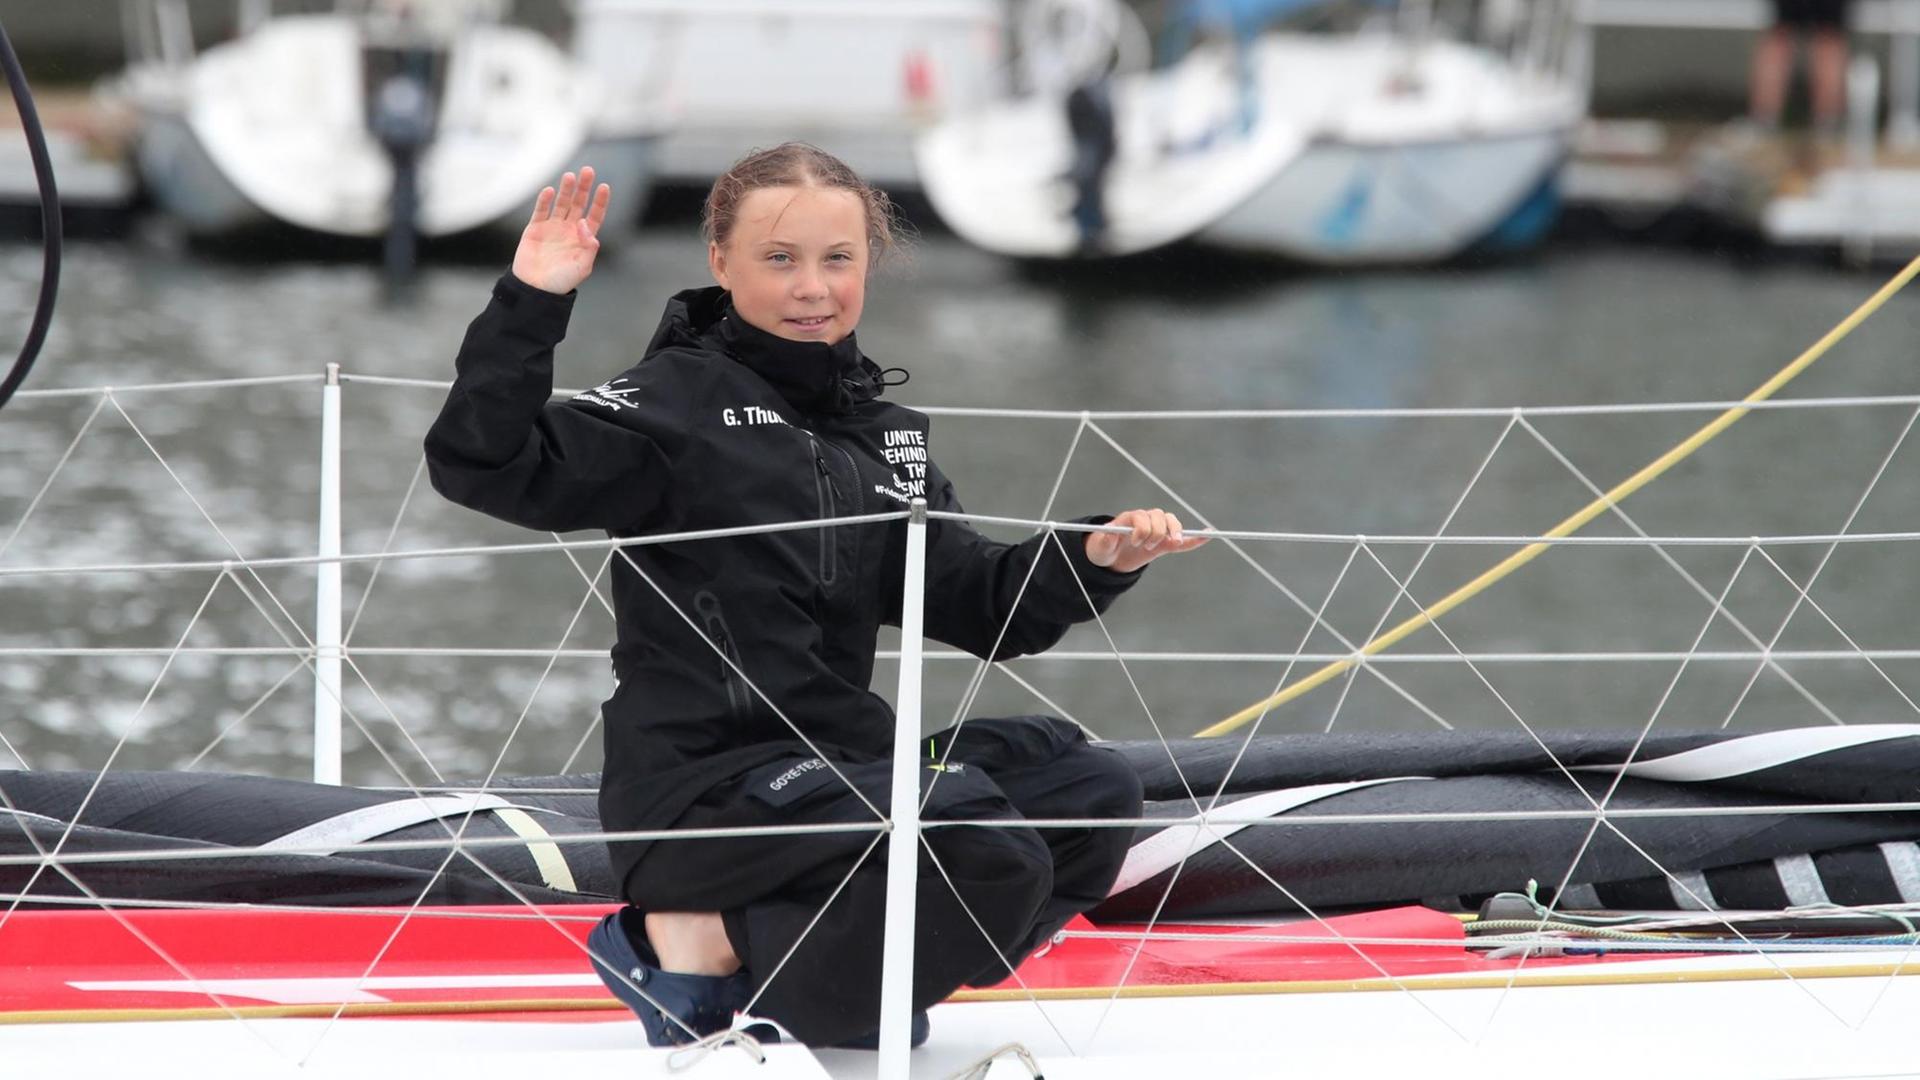 Greta Thunberg kniet an Bord, hält sich an der Reling fest und winkt lächelnd in die Kamera.